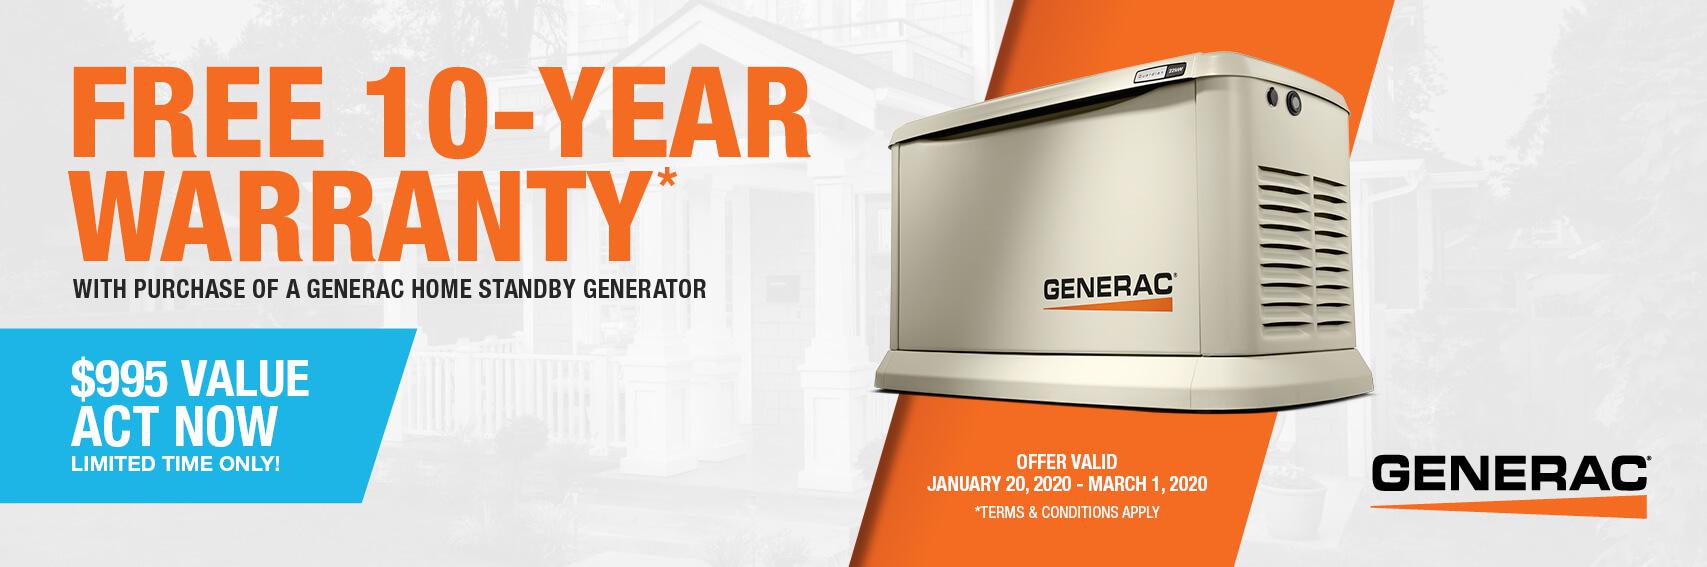 Homestandby Generator Deal | Warranty Offer | Generac Dealer | MATTITUCK, NY